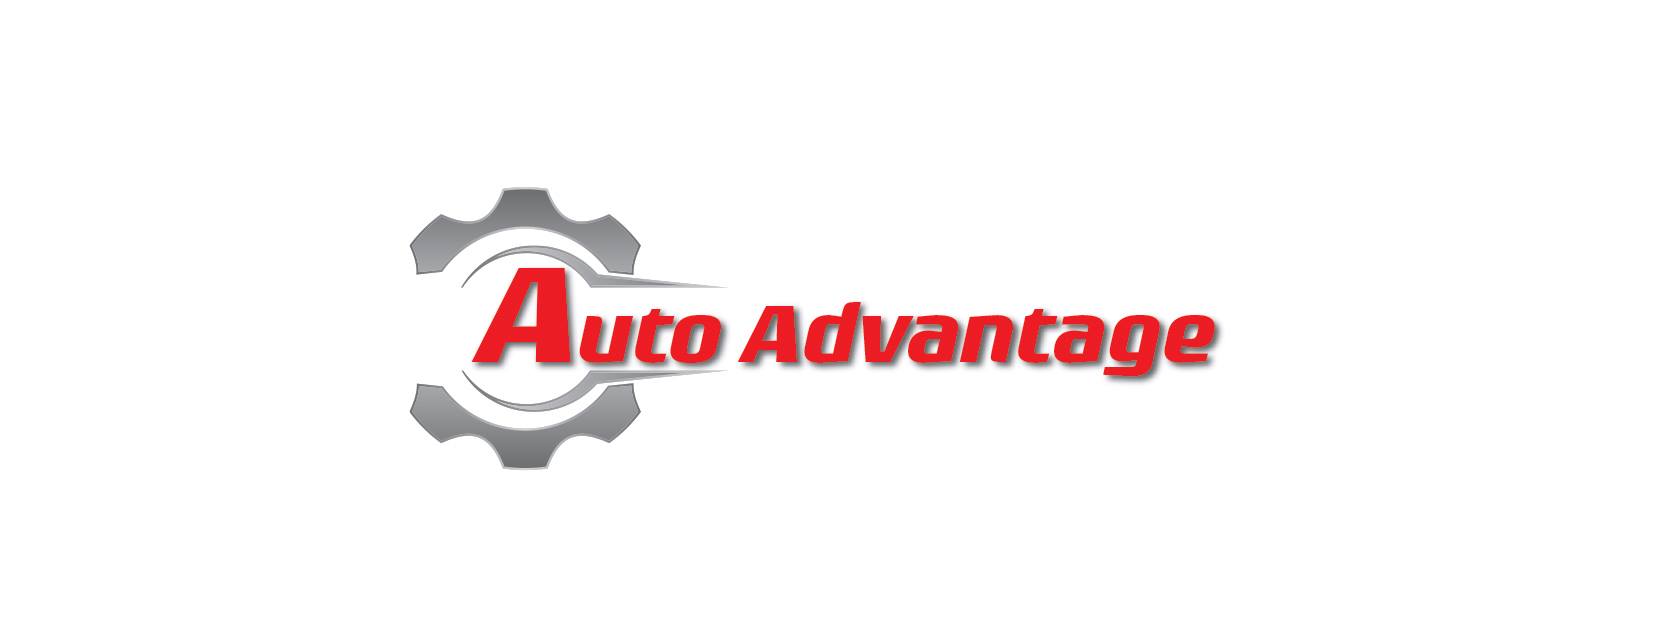 Auto Advantage